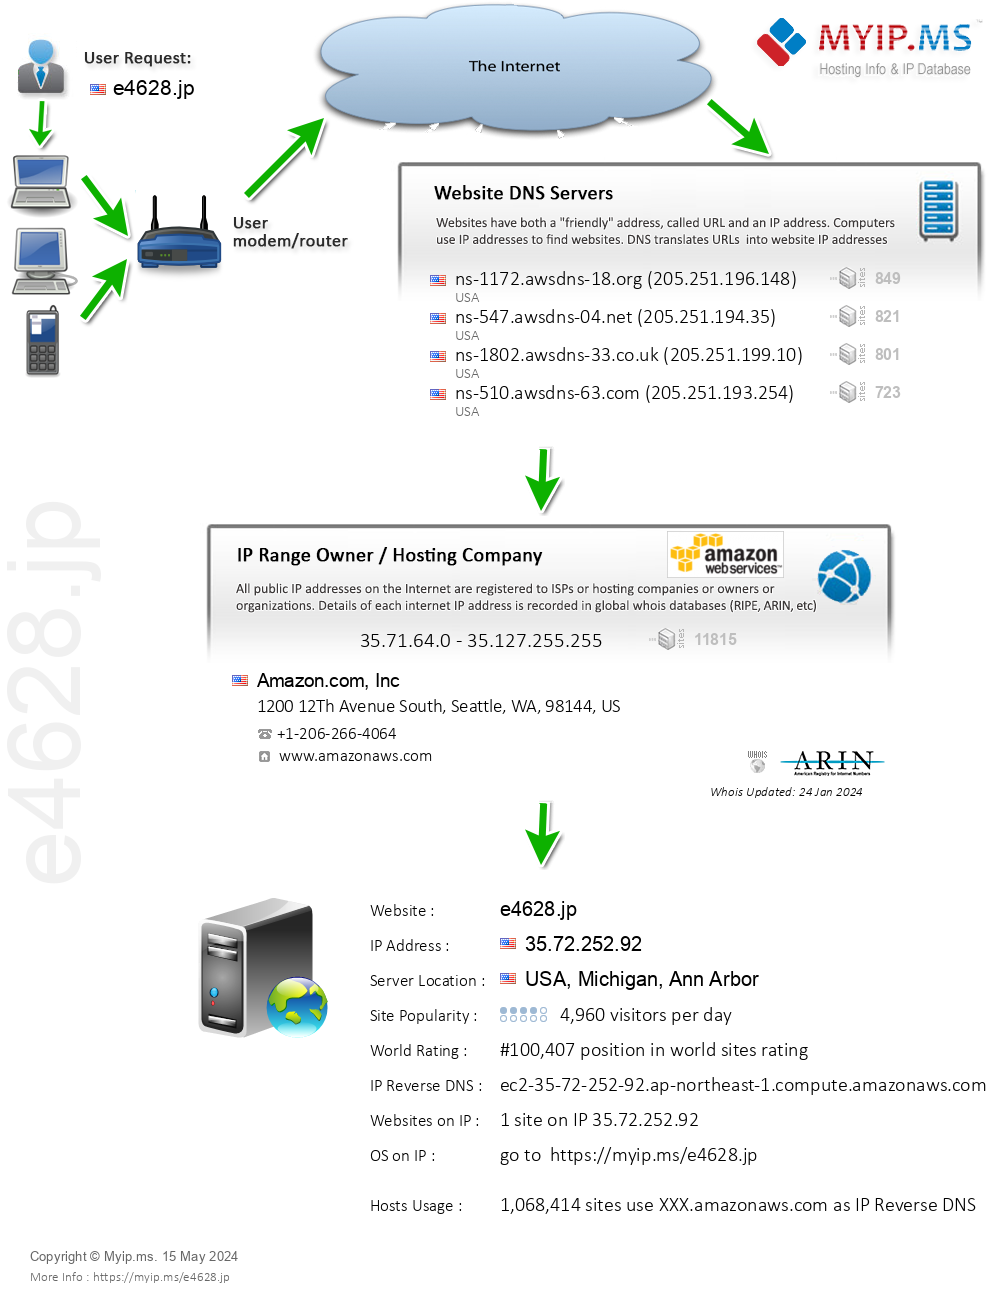 E4628.jp - Website Hosting Visual IP Diagram